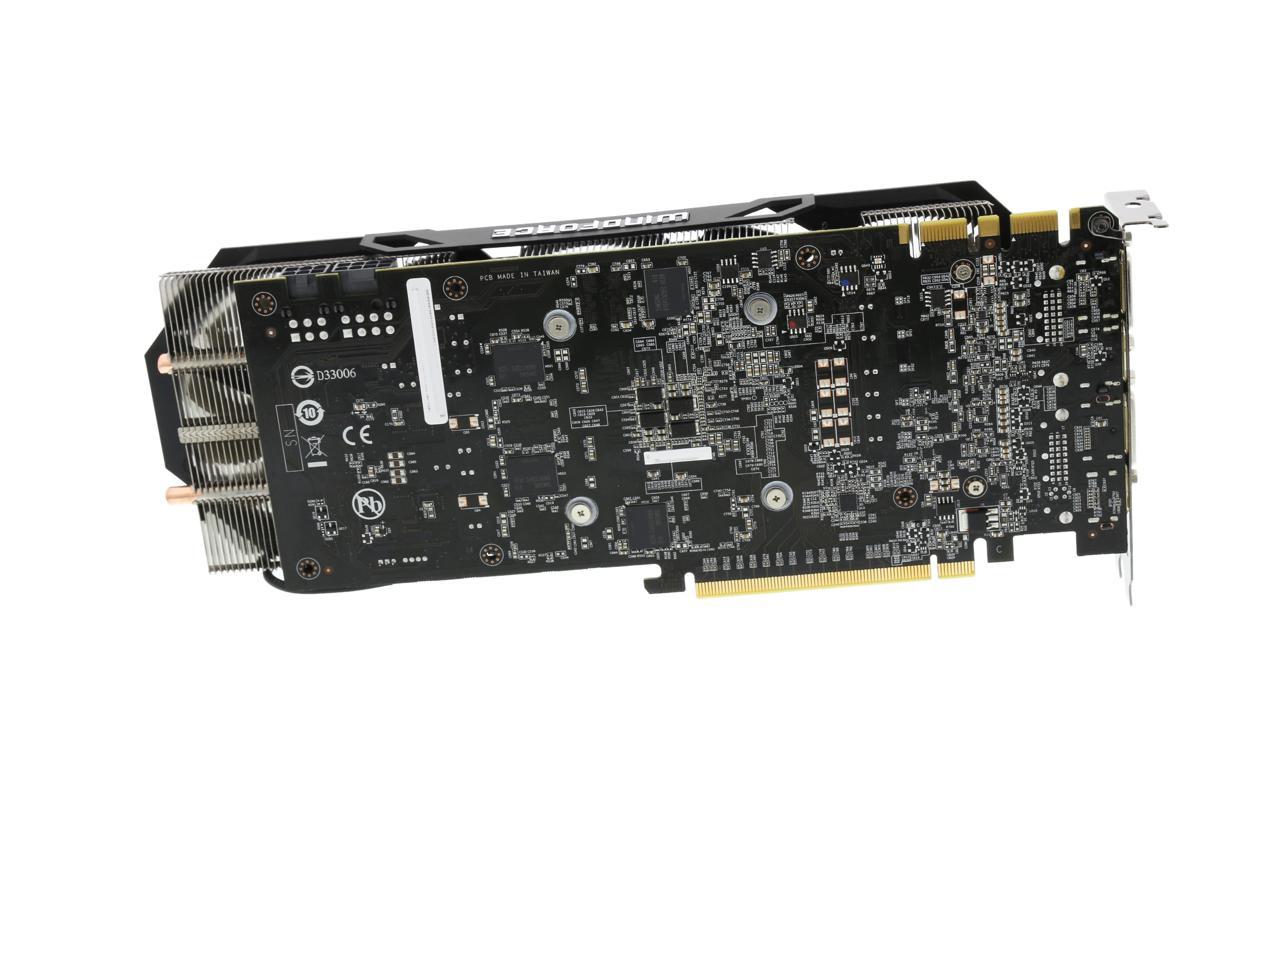 GIGABYTE GeForce GTX 970 4GB WINDFORCE 3X OC EDITION, GV-N970WF3OC-4GD